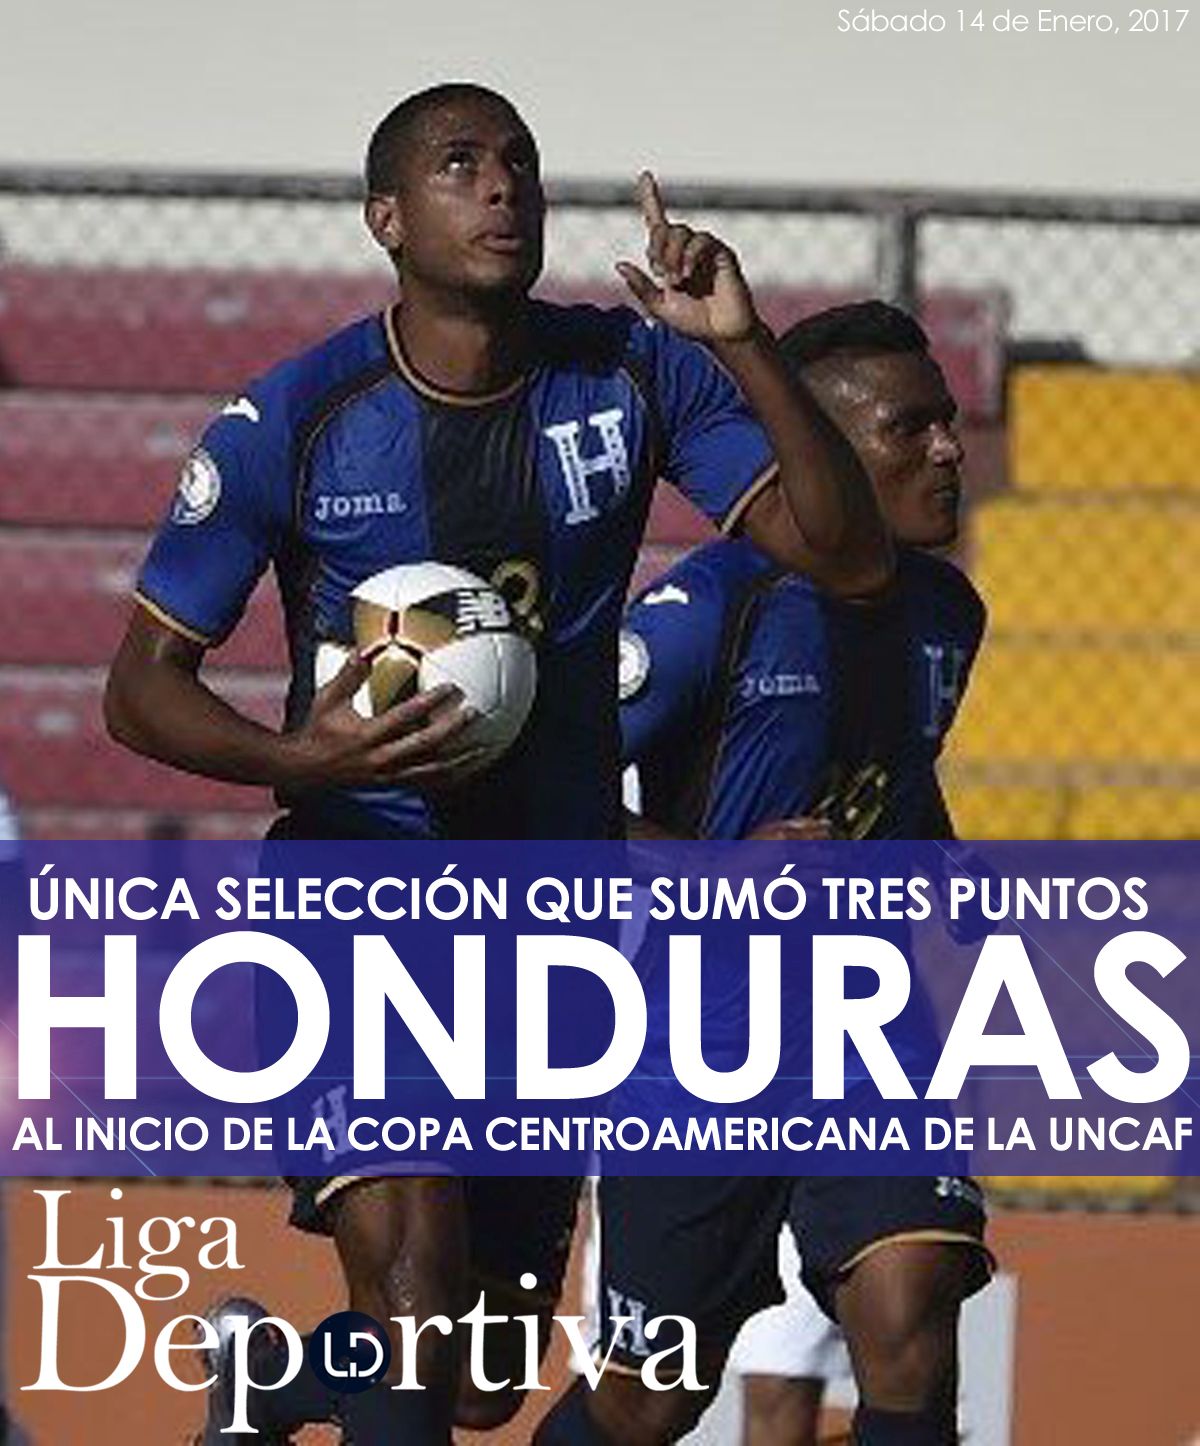 El técnico de la Selección de Honduras Jorge Luis Pinto se manifestó satisfecho con el primer resultado en la Copa Centroamericana Uncaf 2017